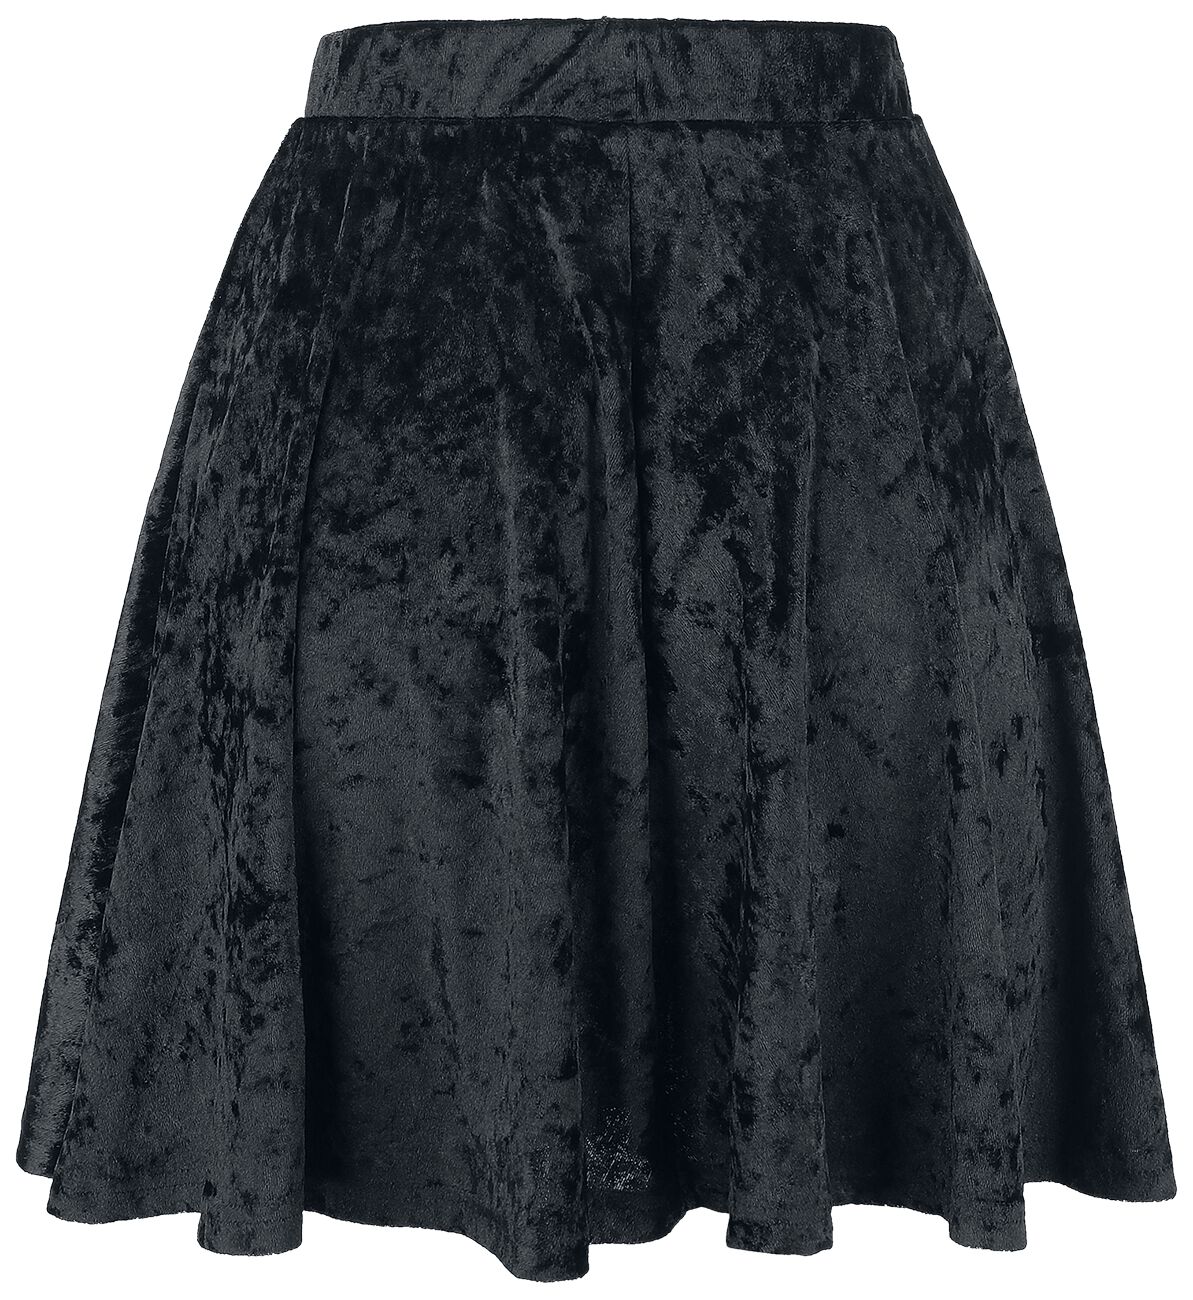 Image of Minigonna Gothic di Forplay - Velvet Skirt - S a XXL - Donna - nero